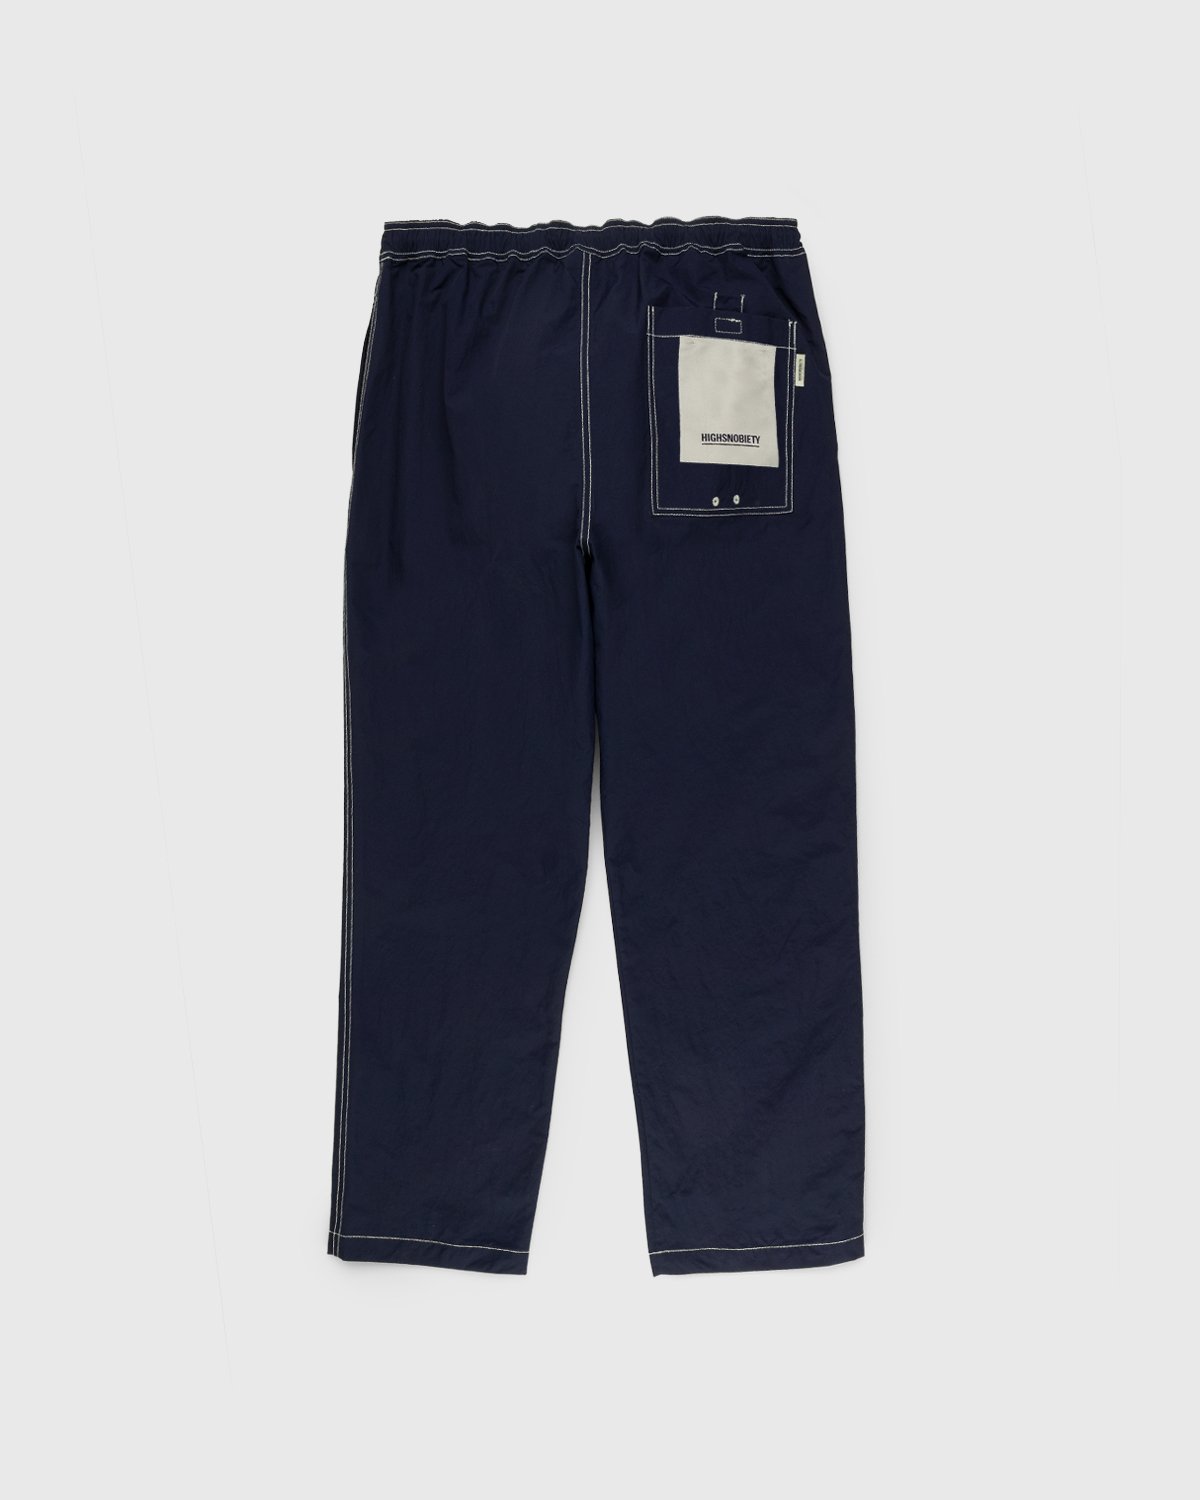 Highsnobiety - Contrast Brushed Nylon Elastic Pants Navy - Clothing - Blue - Image 2